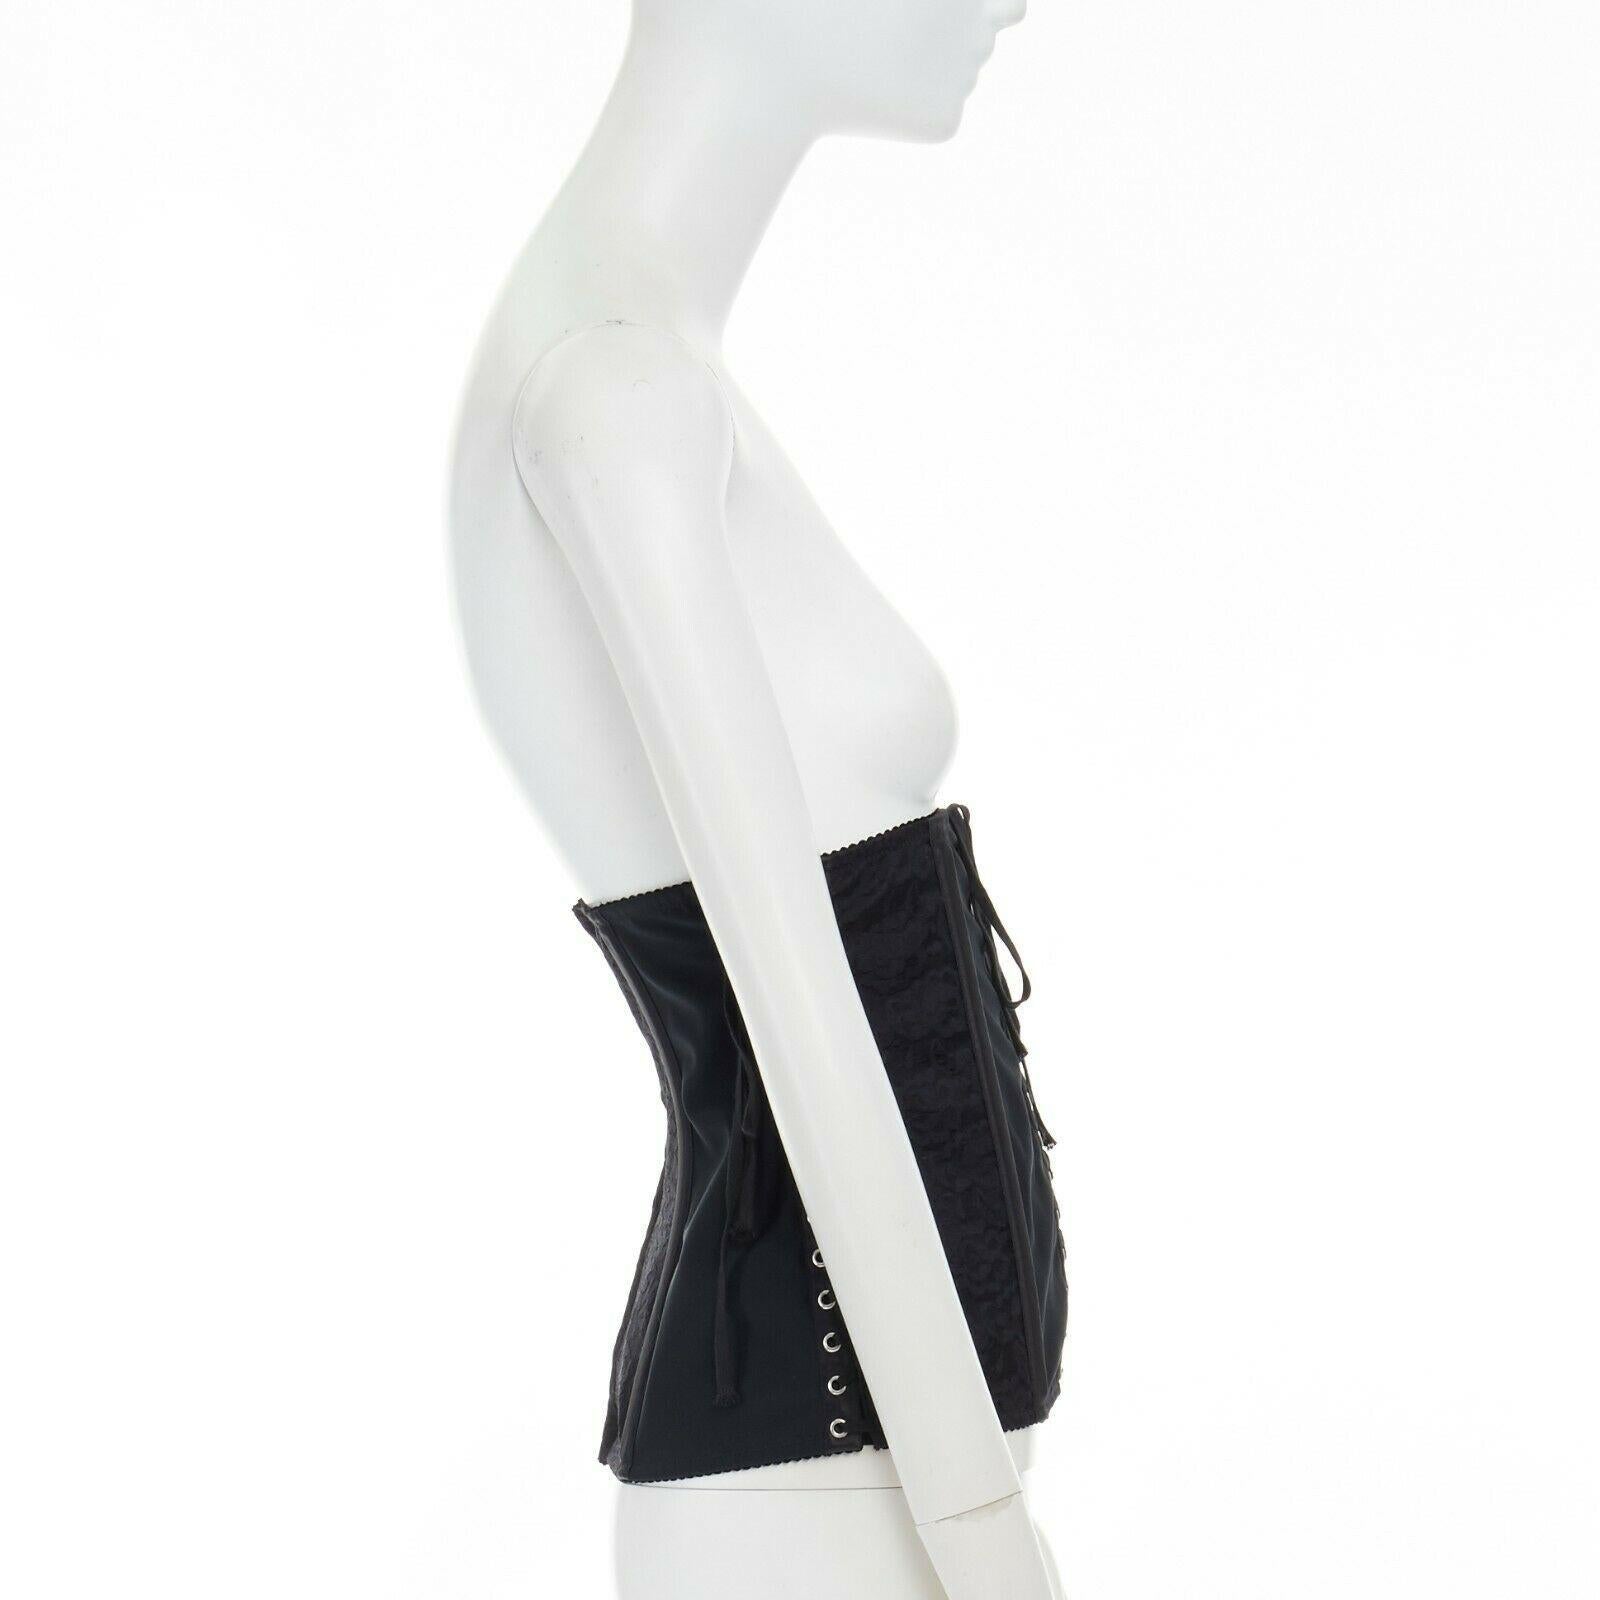 DOLCE GABBANA black floral lace boned laced up corset belt IT42 M 1